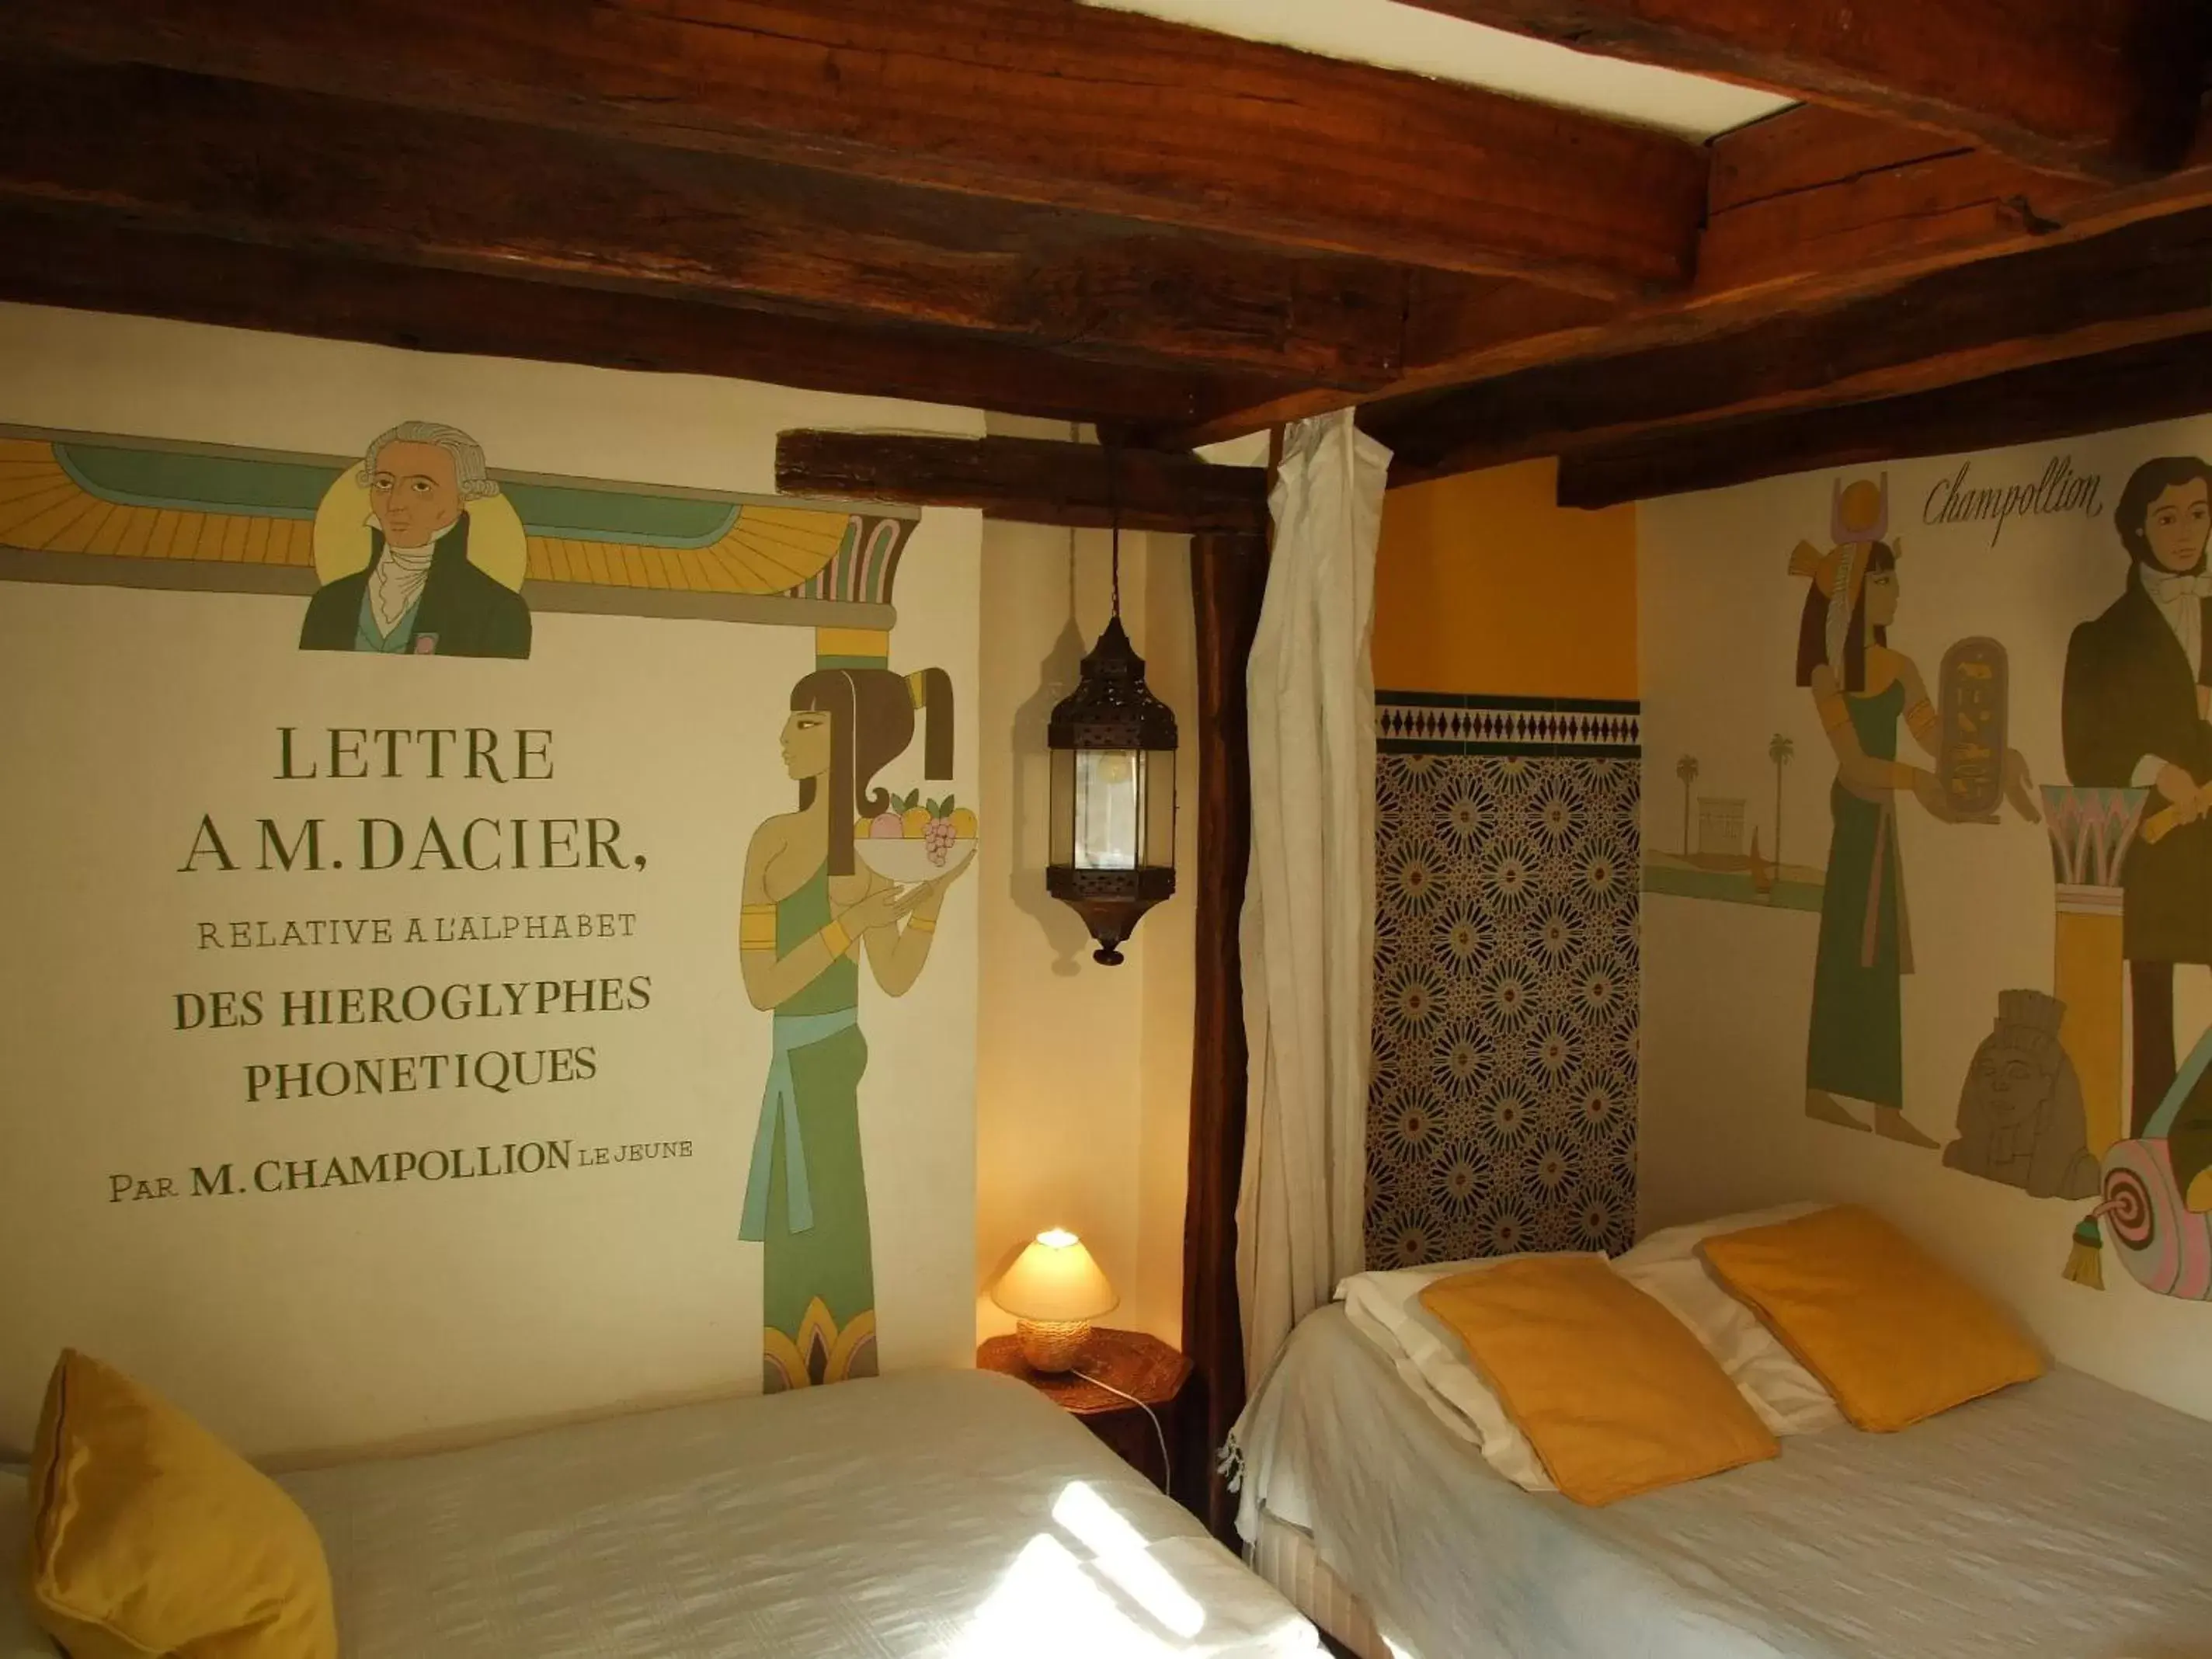 Bedroom in Hotel de Nesle